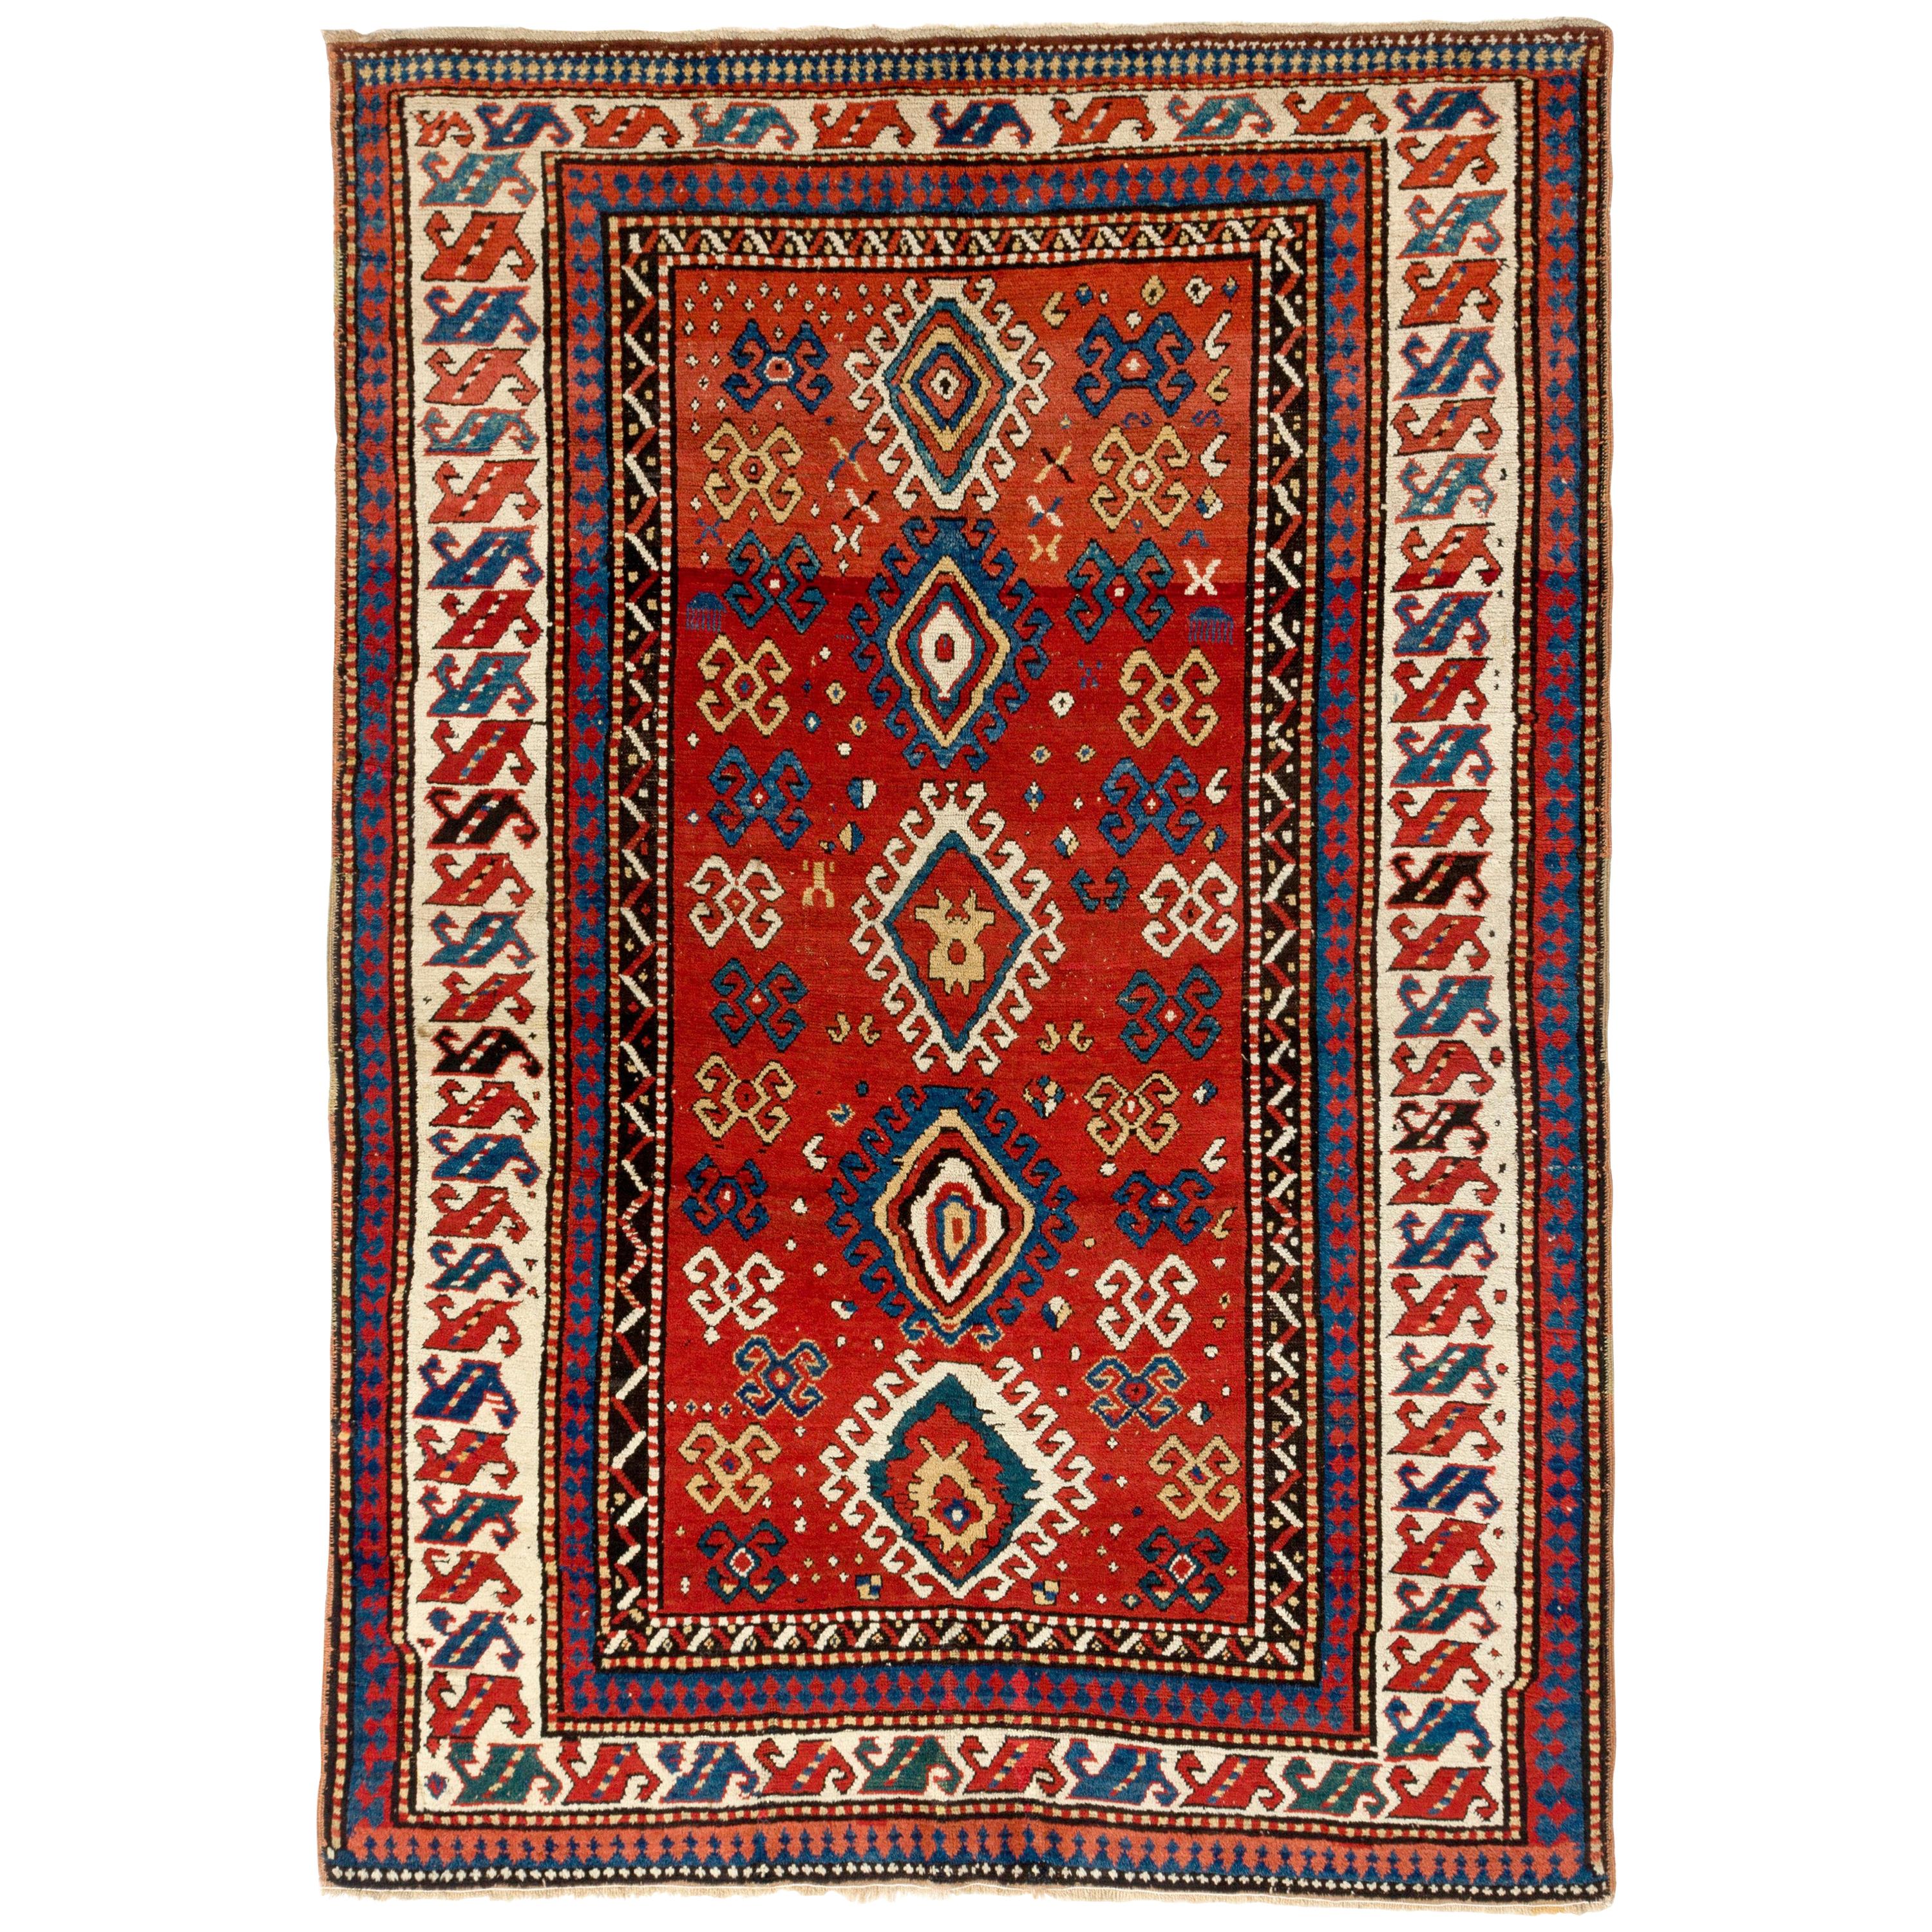 Antiker kaukasischer Kazak-Teppich mit 5.6x8 Fuß, um 1850. Natürliche Farbstoffe. Ausgezeichneter Condit